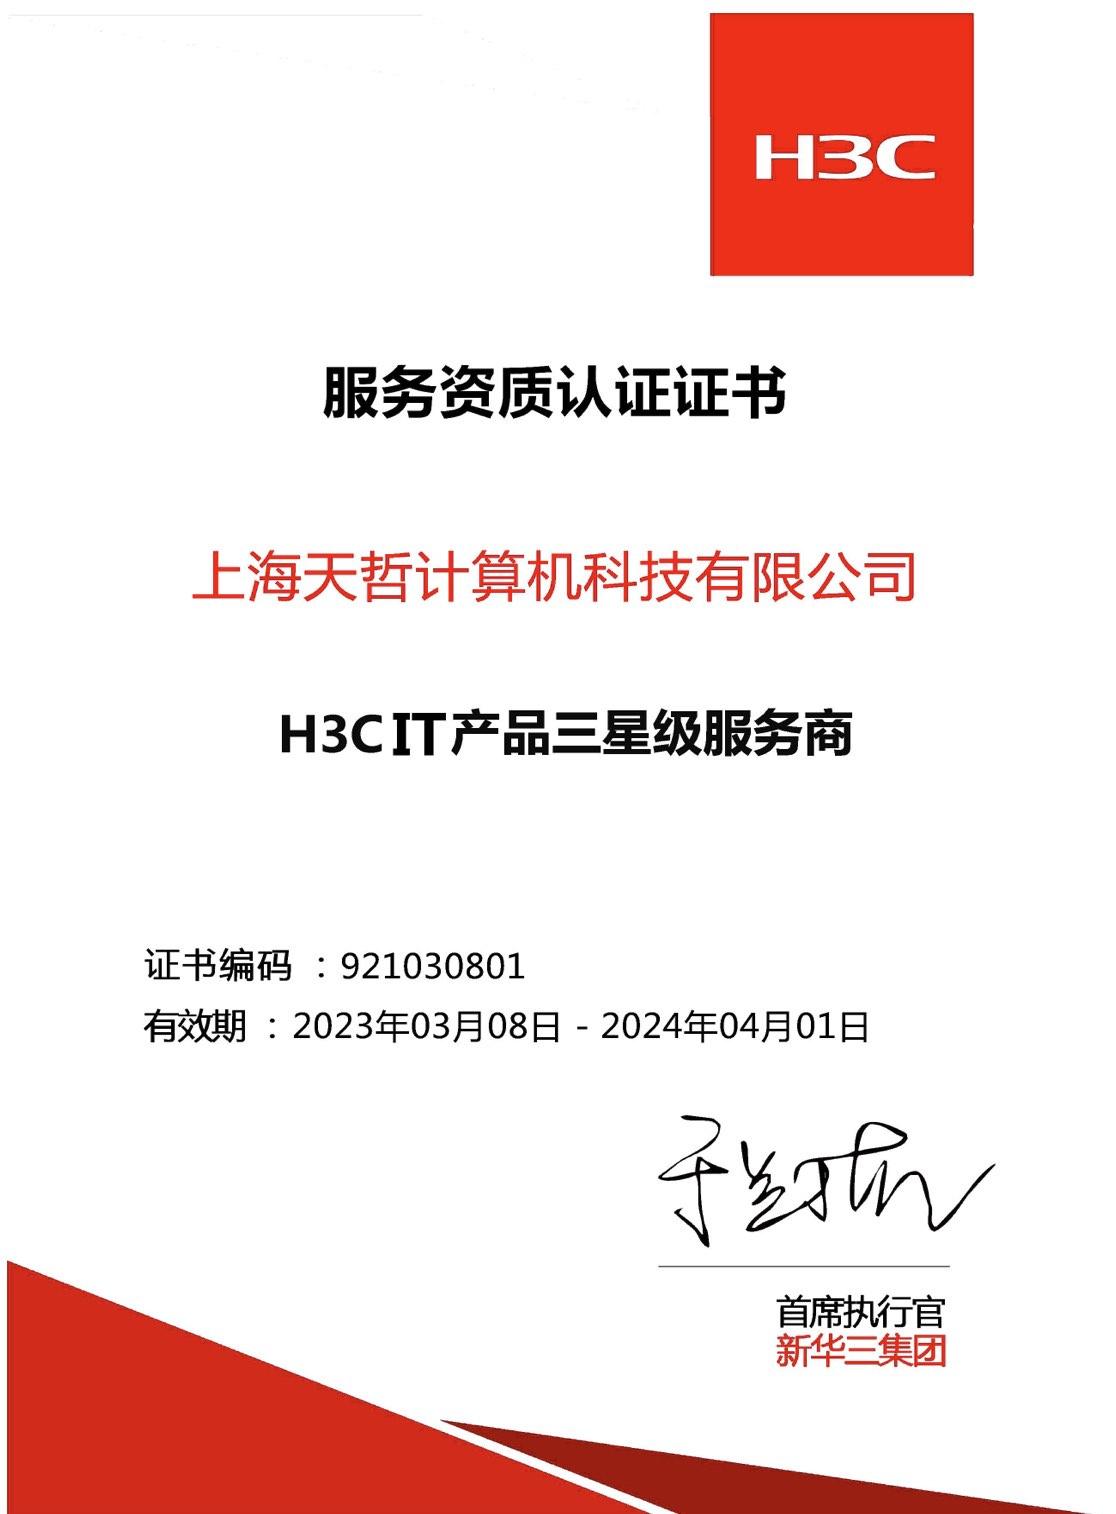 H3CIT産品三星級服務商